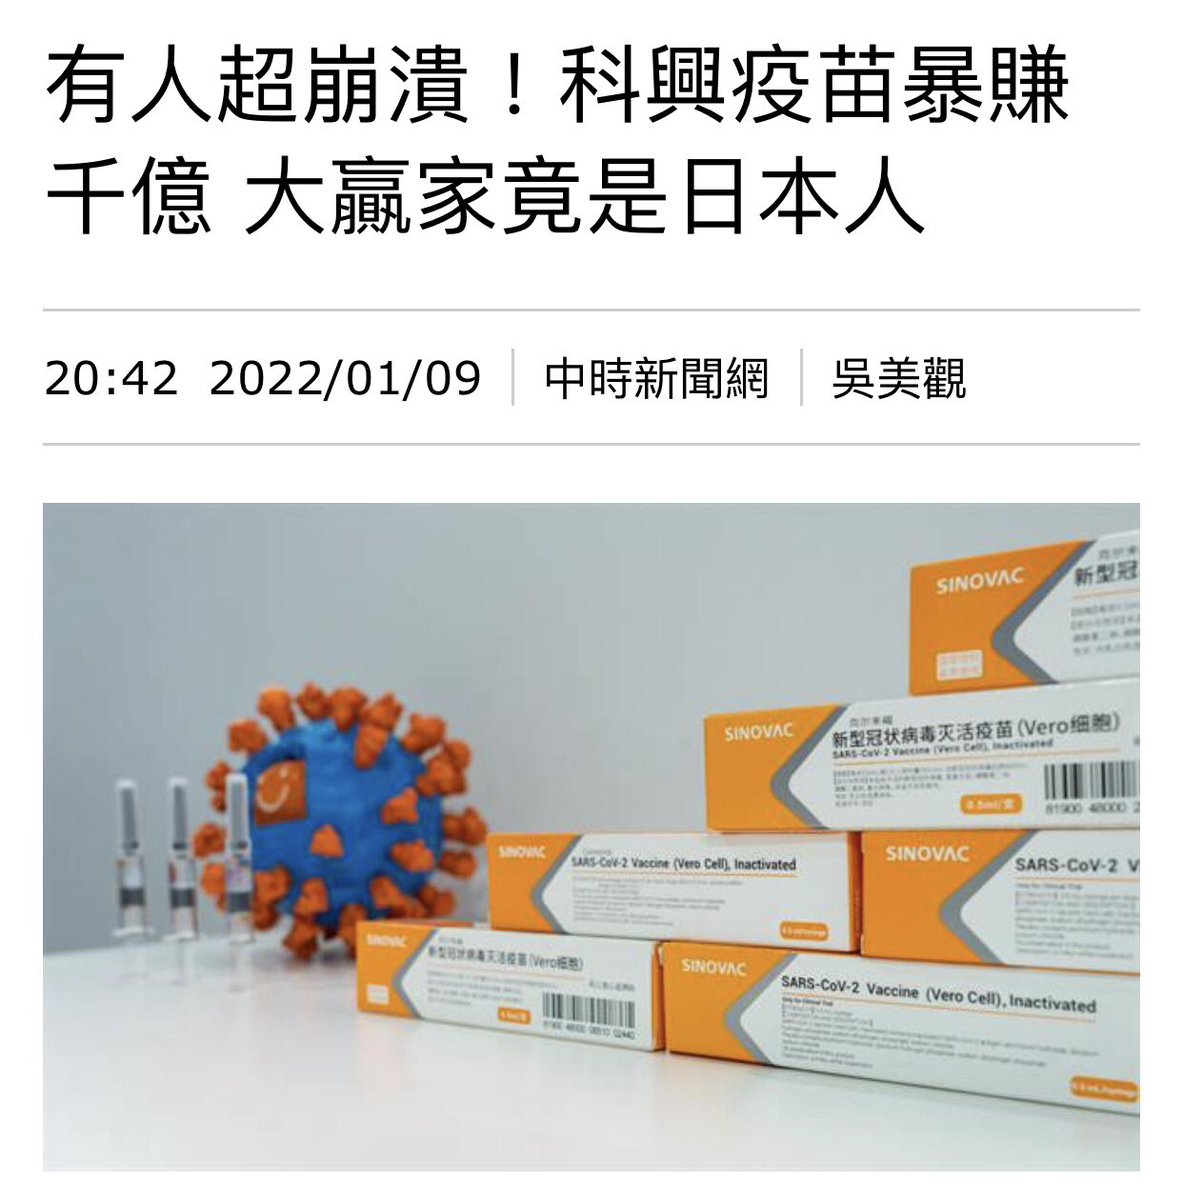 中共 政府 不願給中國人民 施打 比較有效的 上海復星代理的 BNT疫苗， 寧願打 科興疫苗。 如果只是為了 民族尊嚴， 或是為了保護 中國藥廠的收入， 也就罷了。 但是 科興疫苗 有15.0